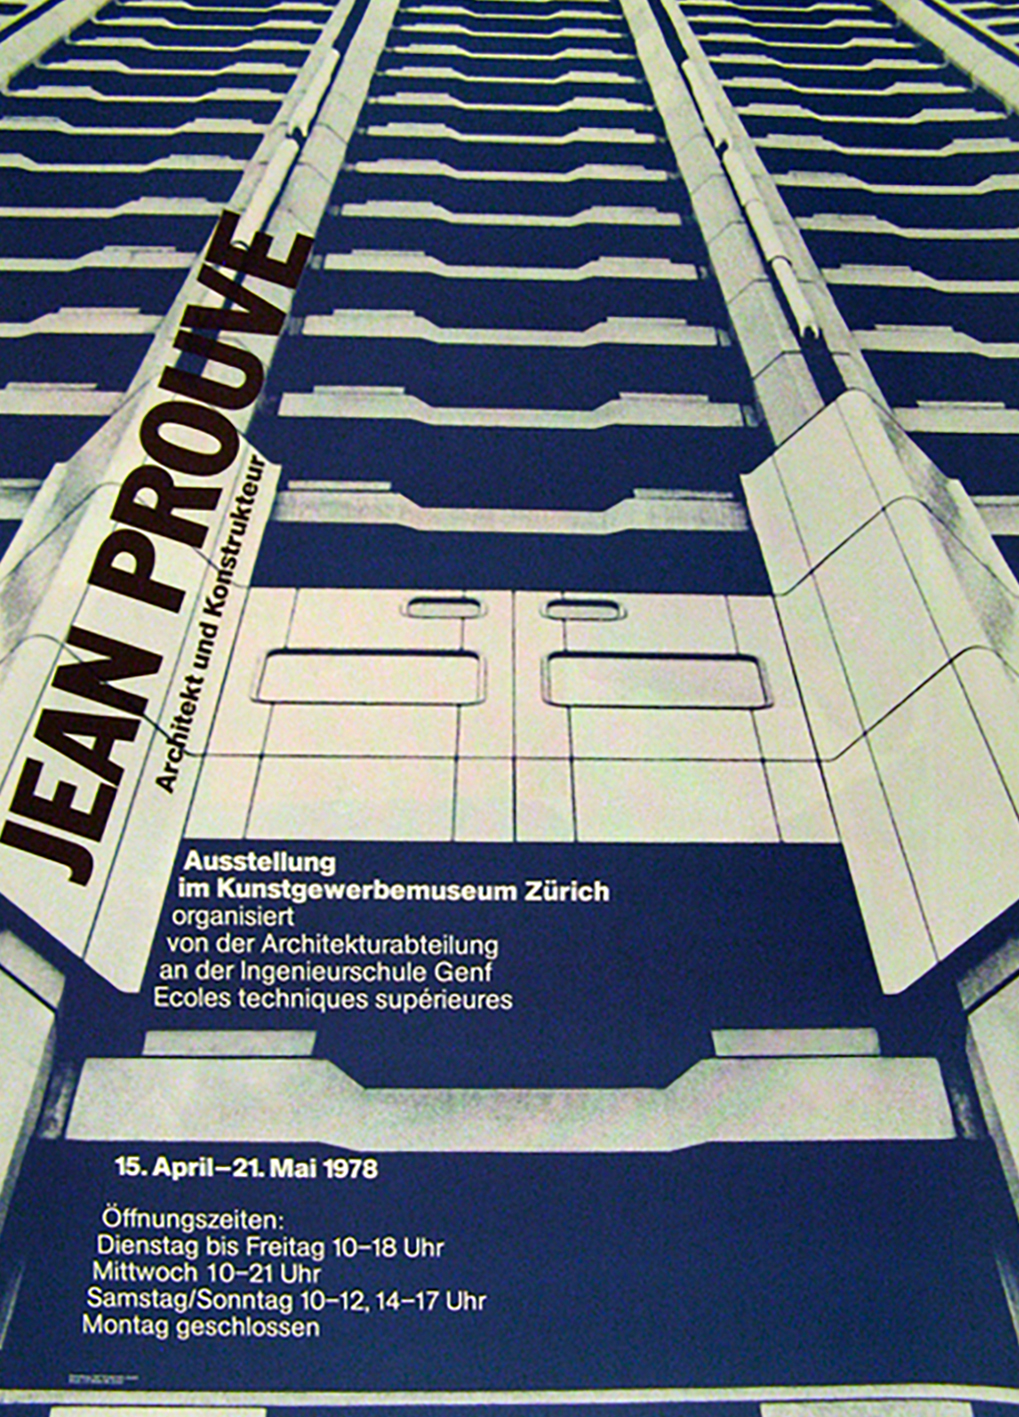 Affiche conçue par Siegfried Odermatt pour une exposition de l'œuvre de Prouvé au Museum für Gestaltung, Zürich, en 1978.